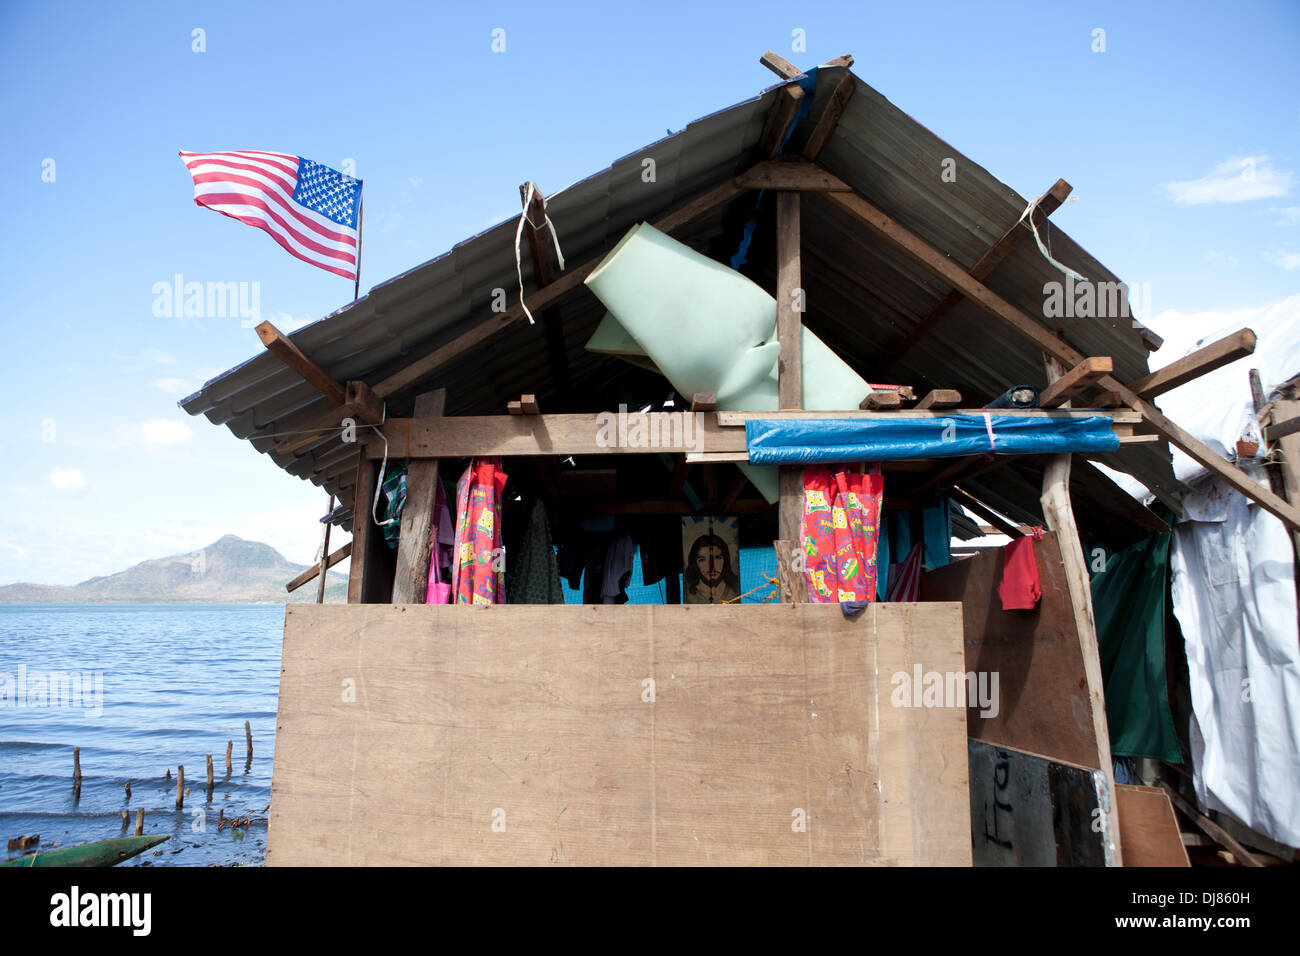 Un simbolo del contributo dato alle Filippine dagli Stati Uniti d'America,a sventola aloft questa casa temporanea eretto dai detriti della mareggiata che accompnied Typhoon Haiyan/Yolanda. Foto Stock